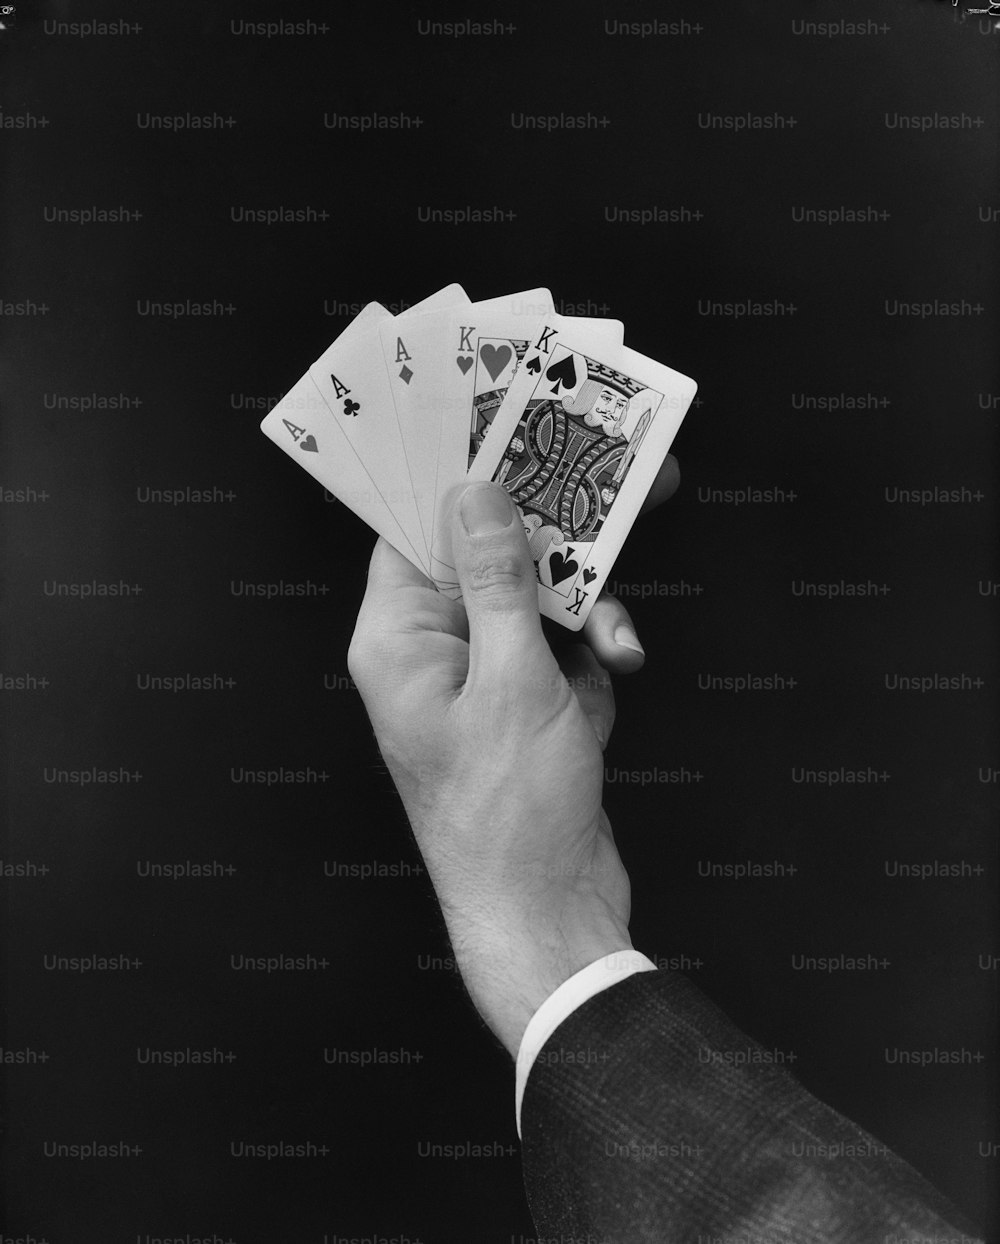 ESTADOS UNIDOS - CIRCA 1950s: La mano de un hombre sosteniendo una mano de cartas de póquer 'fullhouse'.